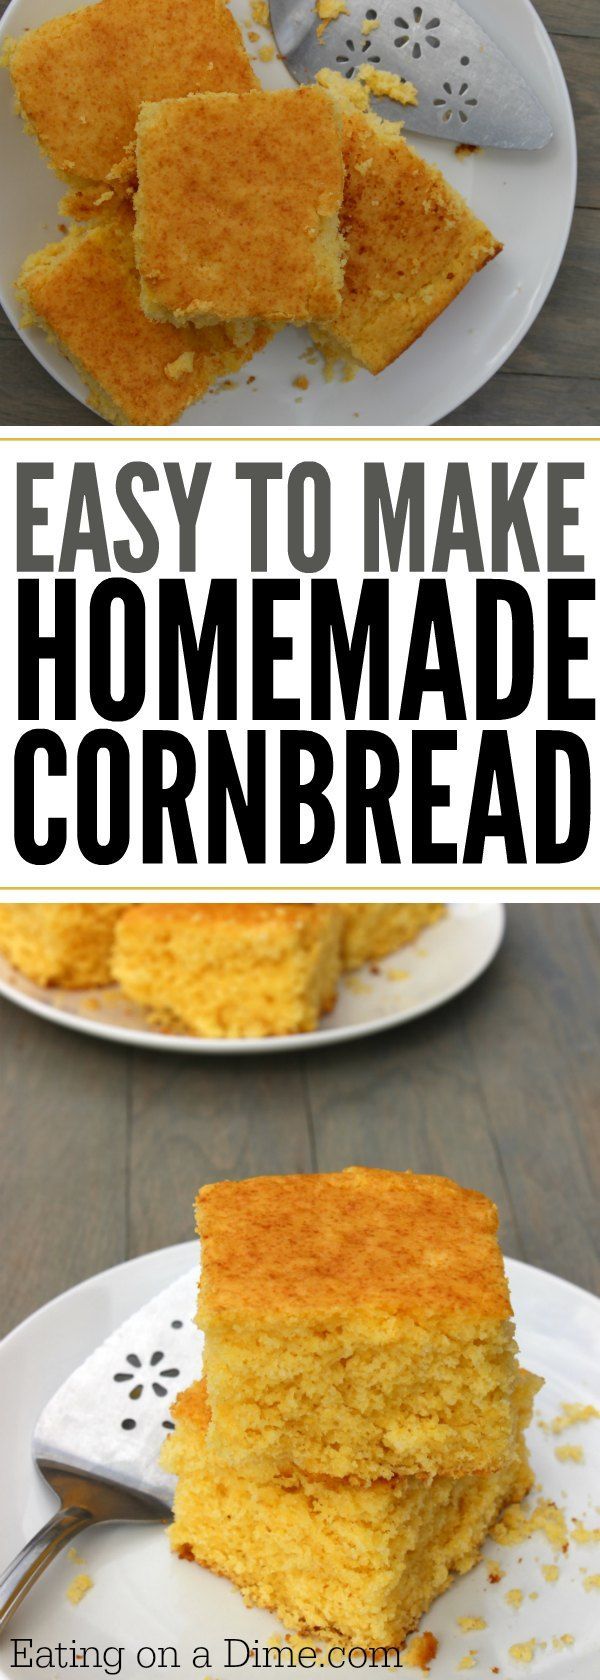 21 corn bread recipes
 ideas